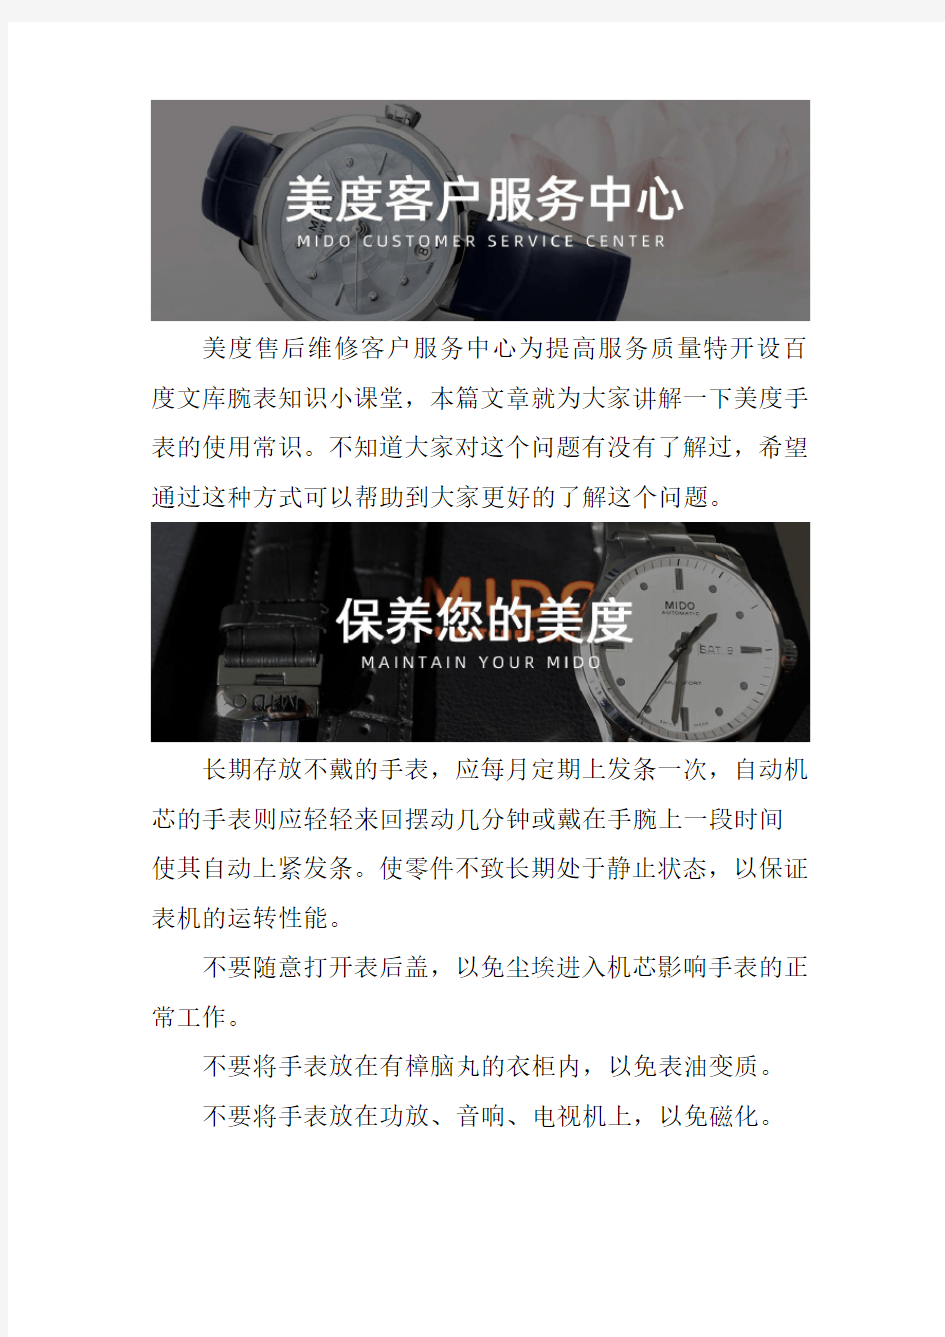 广州美度手表售后维修服务中心-- 美度手表的使用常识